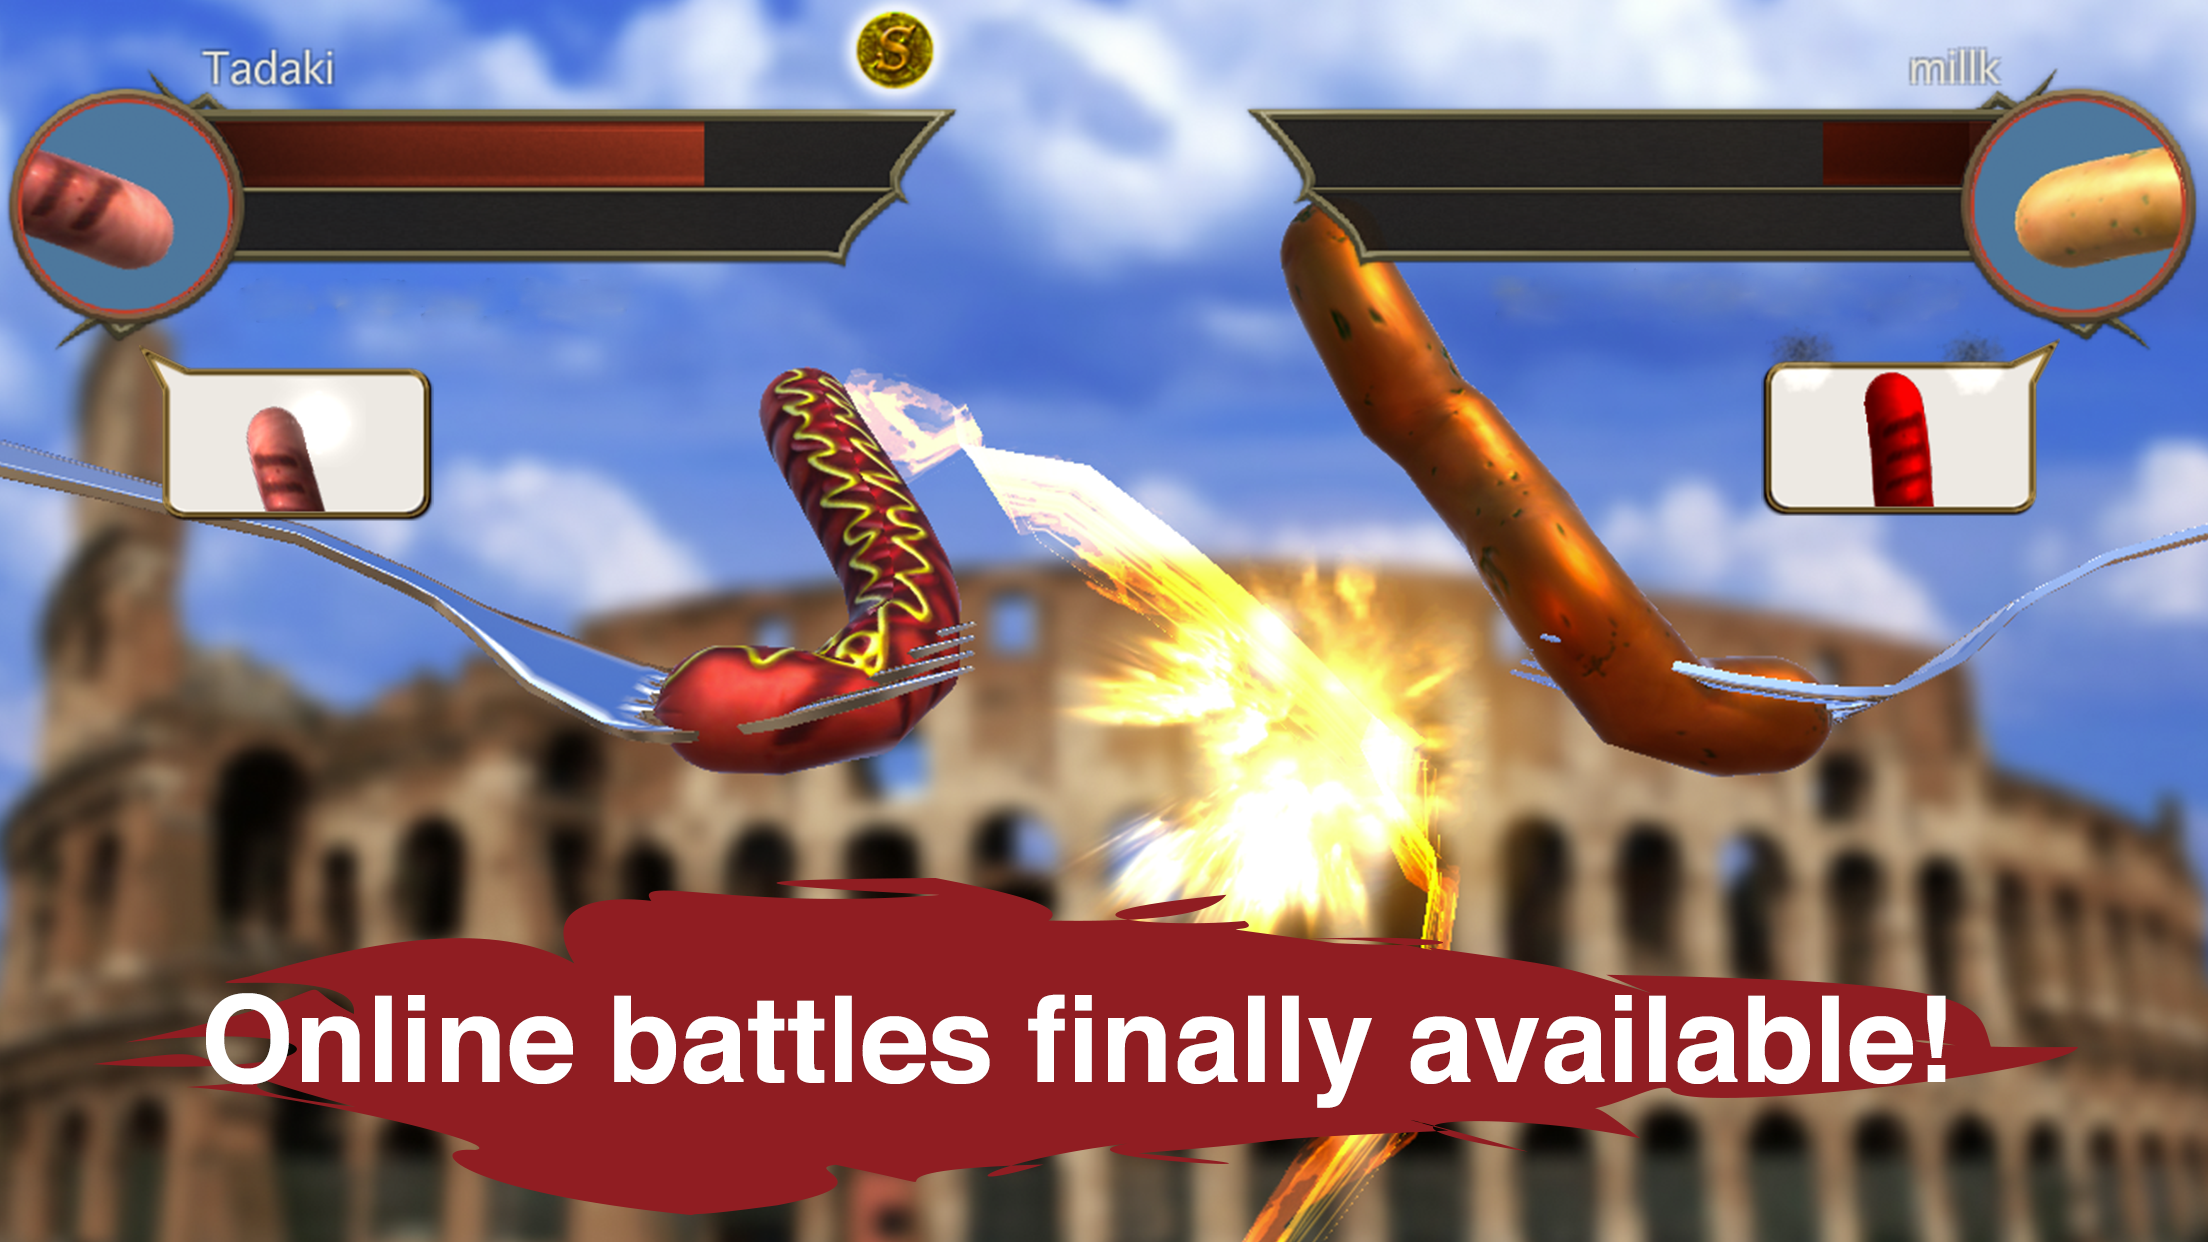 Screenshot 1 of Huyền thoại xúc xích - Trận chiến nhiều người chơi trực tuyến 2.3.1